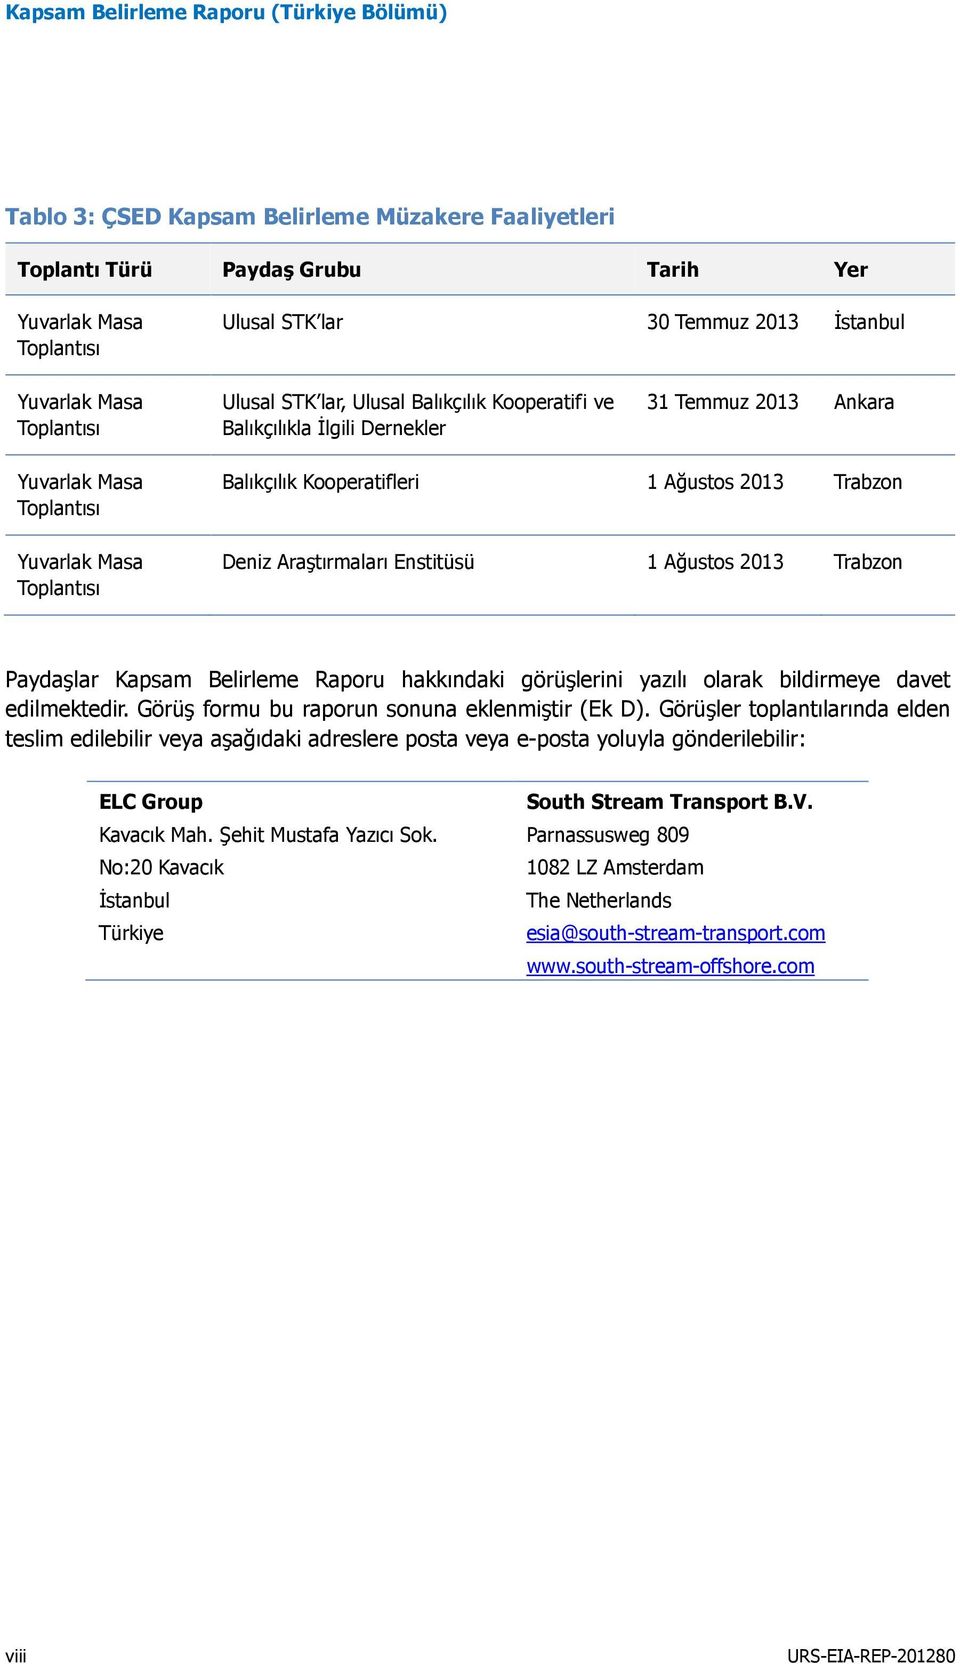 Kooperatifleri 1 Ağustos 2013 Trabzon Deniz Araştırmaları Enstitüsü 1 Ağustos 2013 Trabzon Paydaşlar Kapsam Belirleme Raporu hakkındaki görüşlerini yazılı olarak bildirmeye davet edilmektedir.